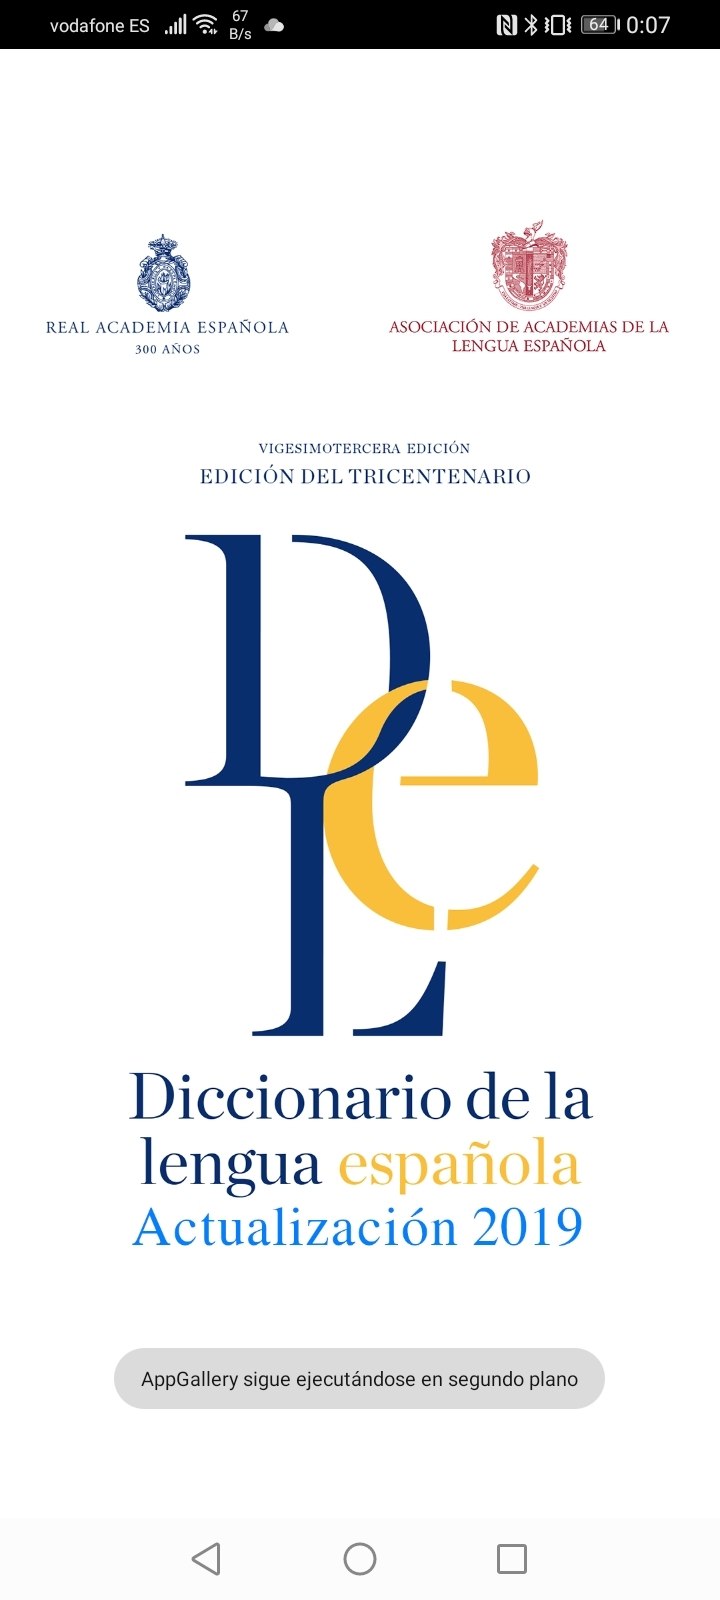 App-Share-Honor-9A-y-DLE-diccionario-de-la-lengua-española